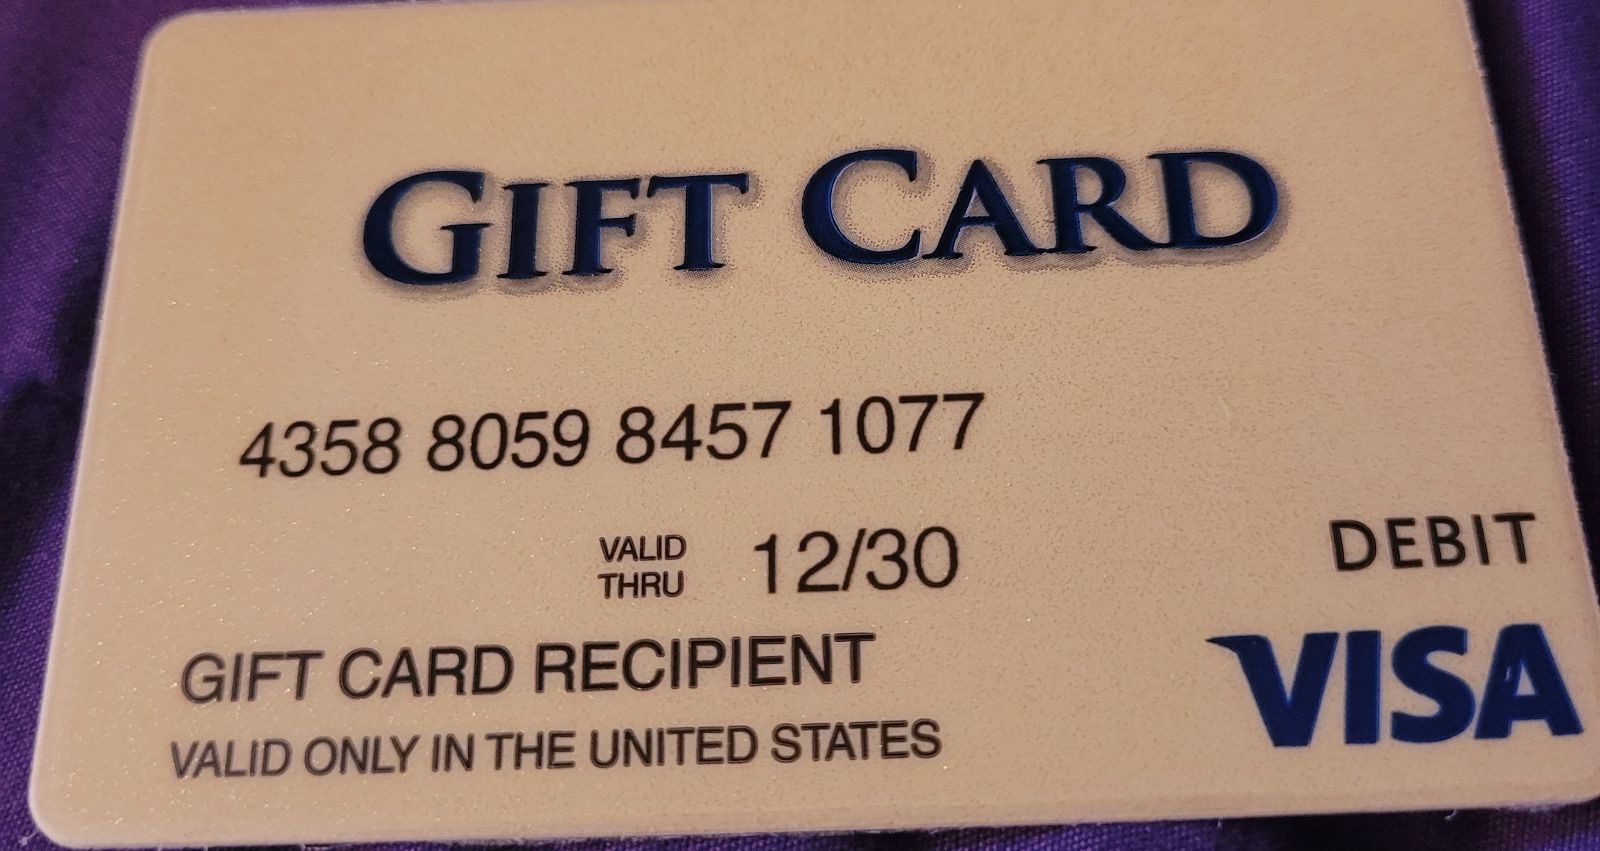 A standard Visa gift card